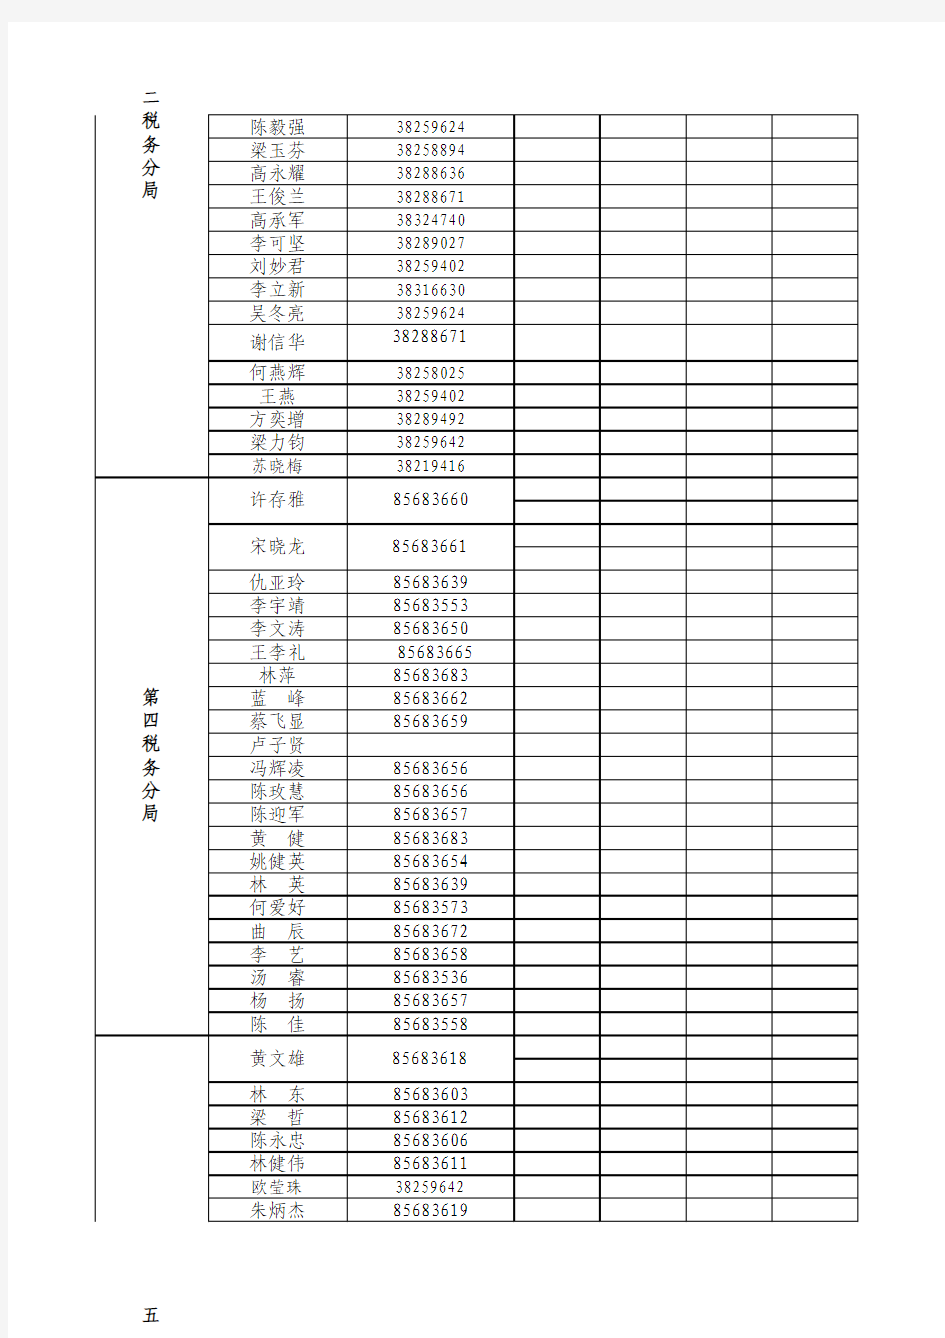 天河国税税收管理员查询清单(截止至2011年8月5日)